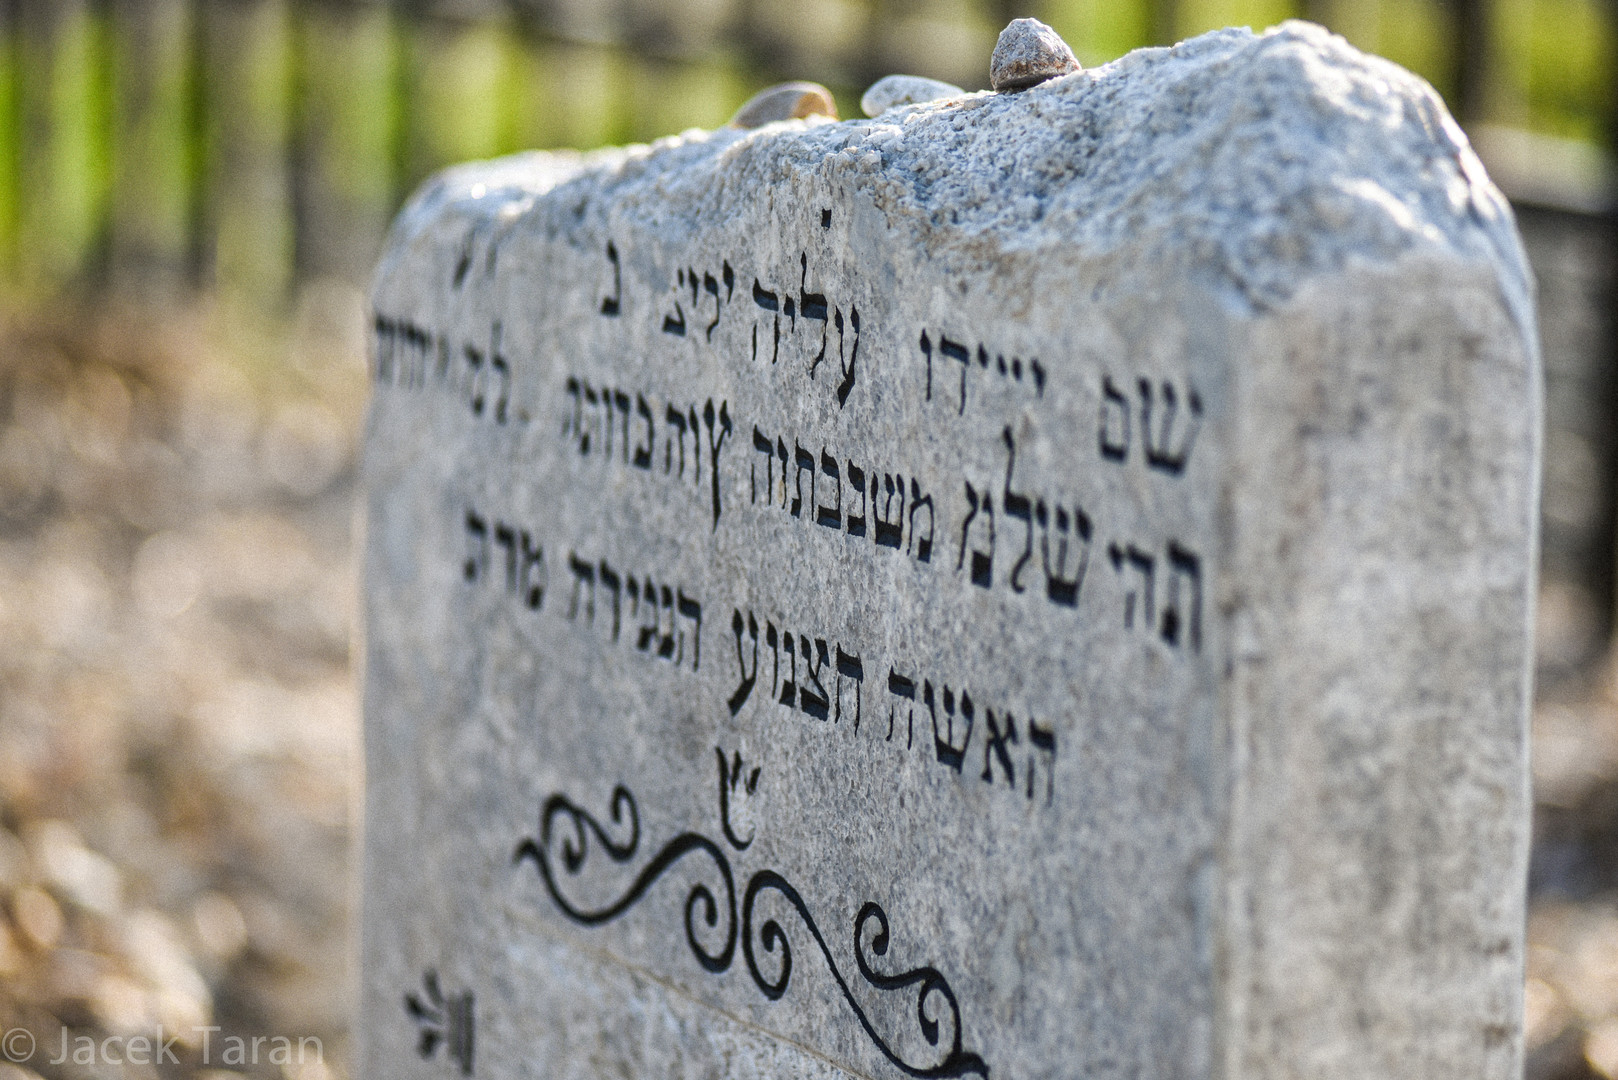 Kadr z filmu "Ukos światła" - macewa na cmentarzu żydowskim.